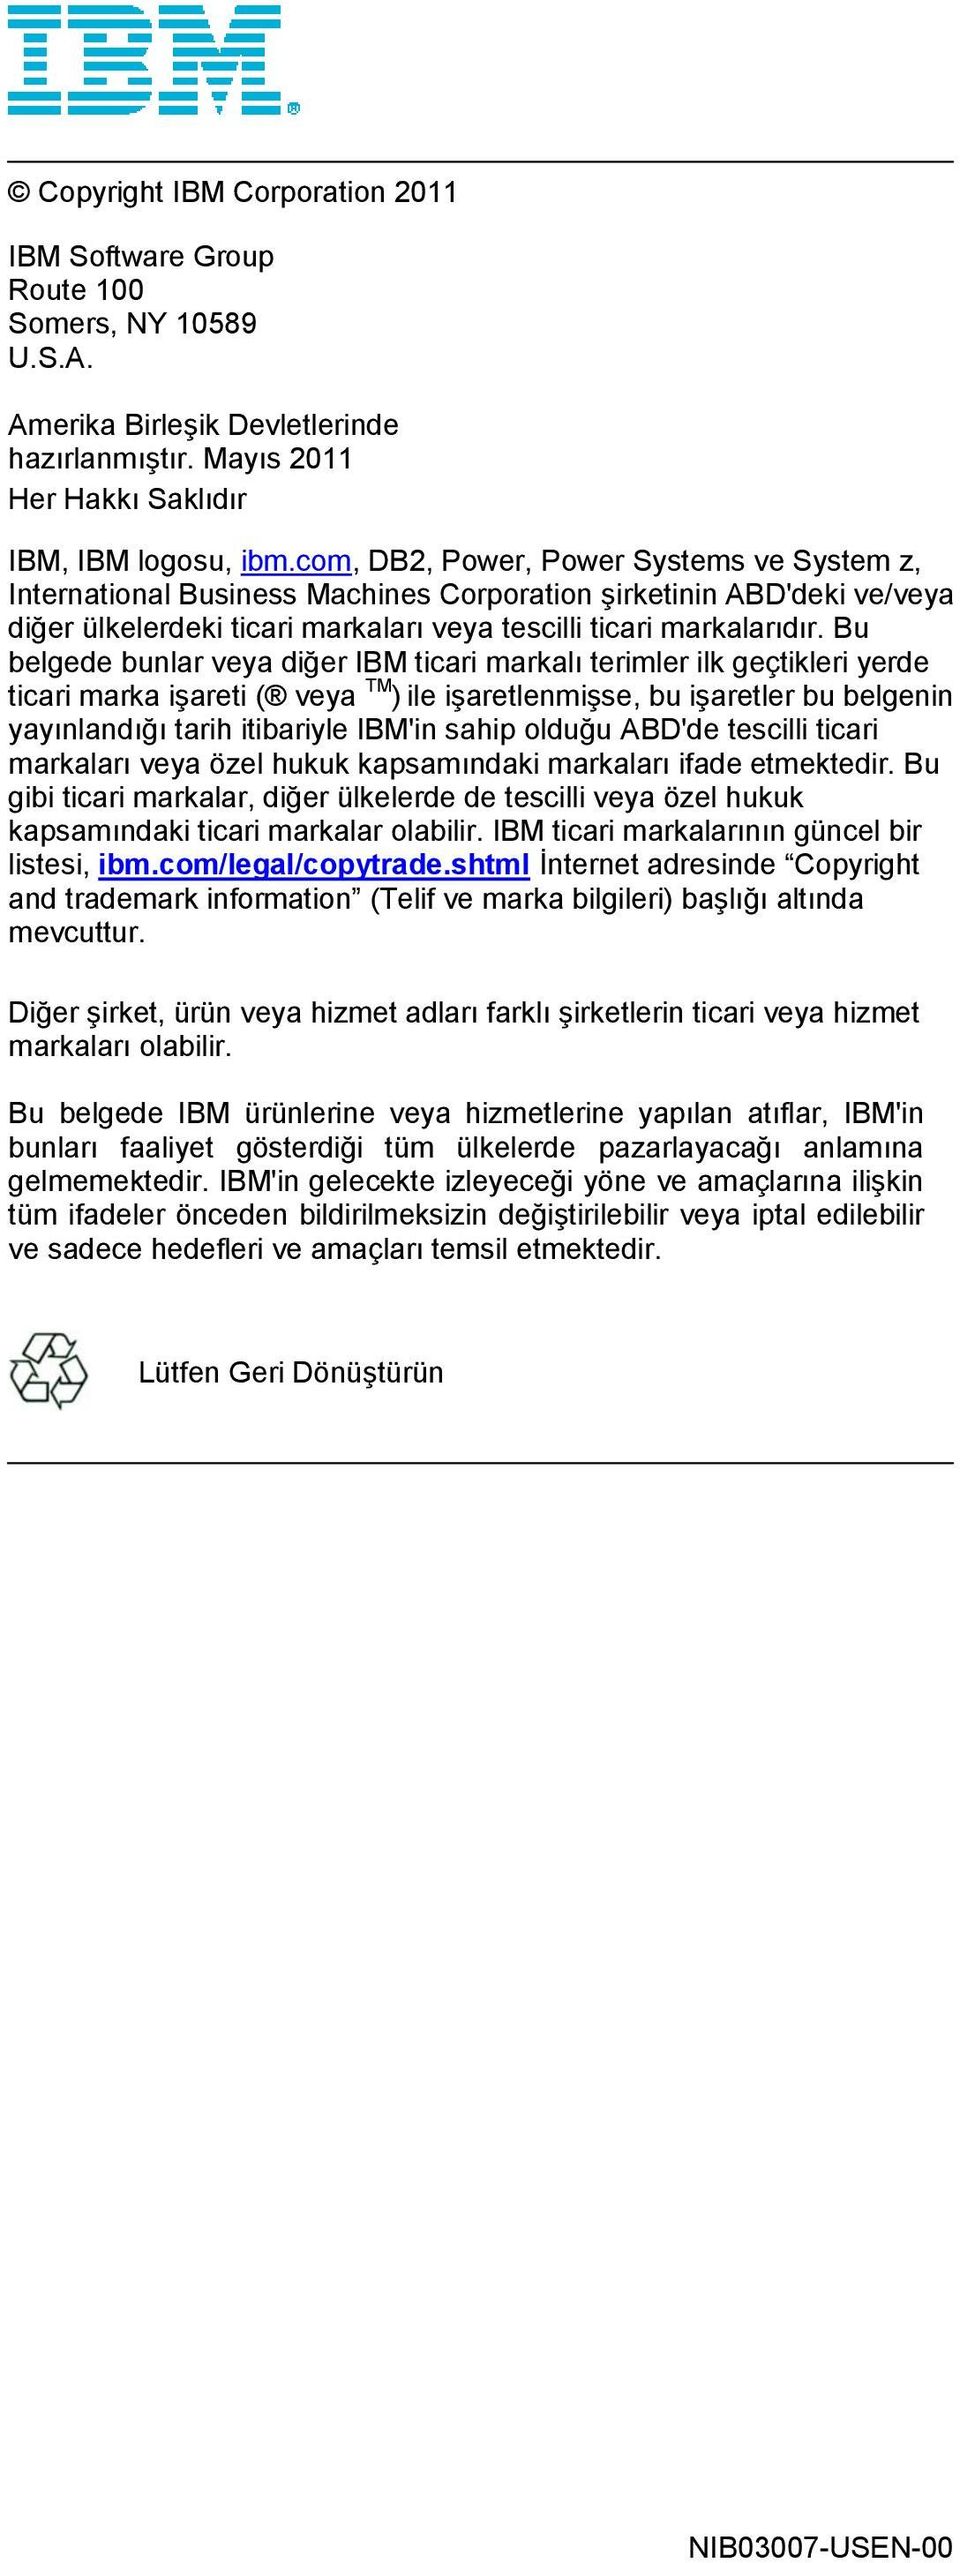 Bu belgede bunlar veya diğer IBM ticari markalı terimler ilk geçtikleri yerde ticari marka işareti ( veya TM ) ile işaretlenmişse, bu işaretler bu belgenin yayınlandığı tarih itibariyle IBM'in sahip